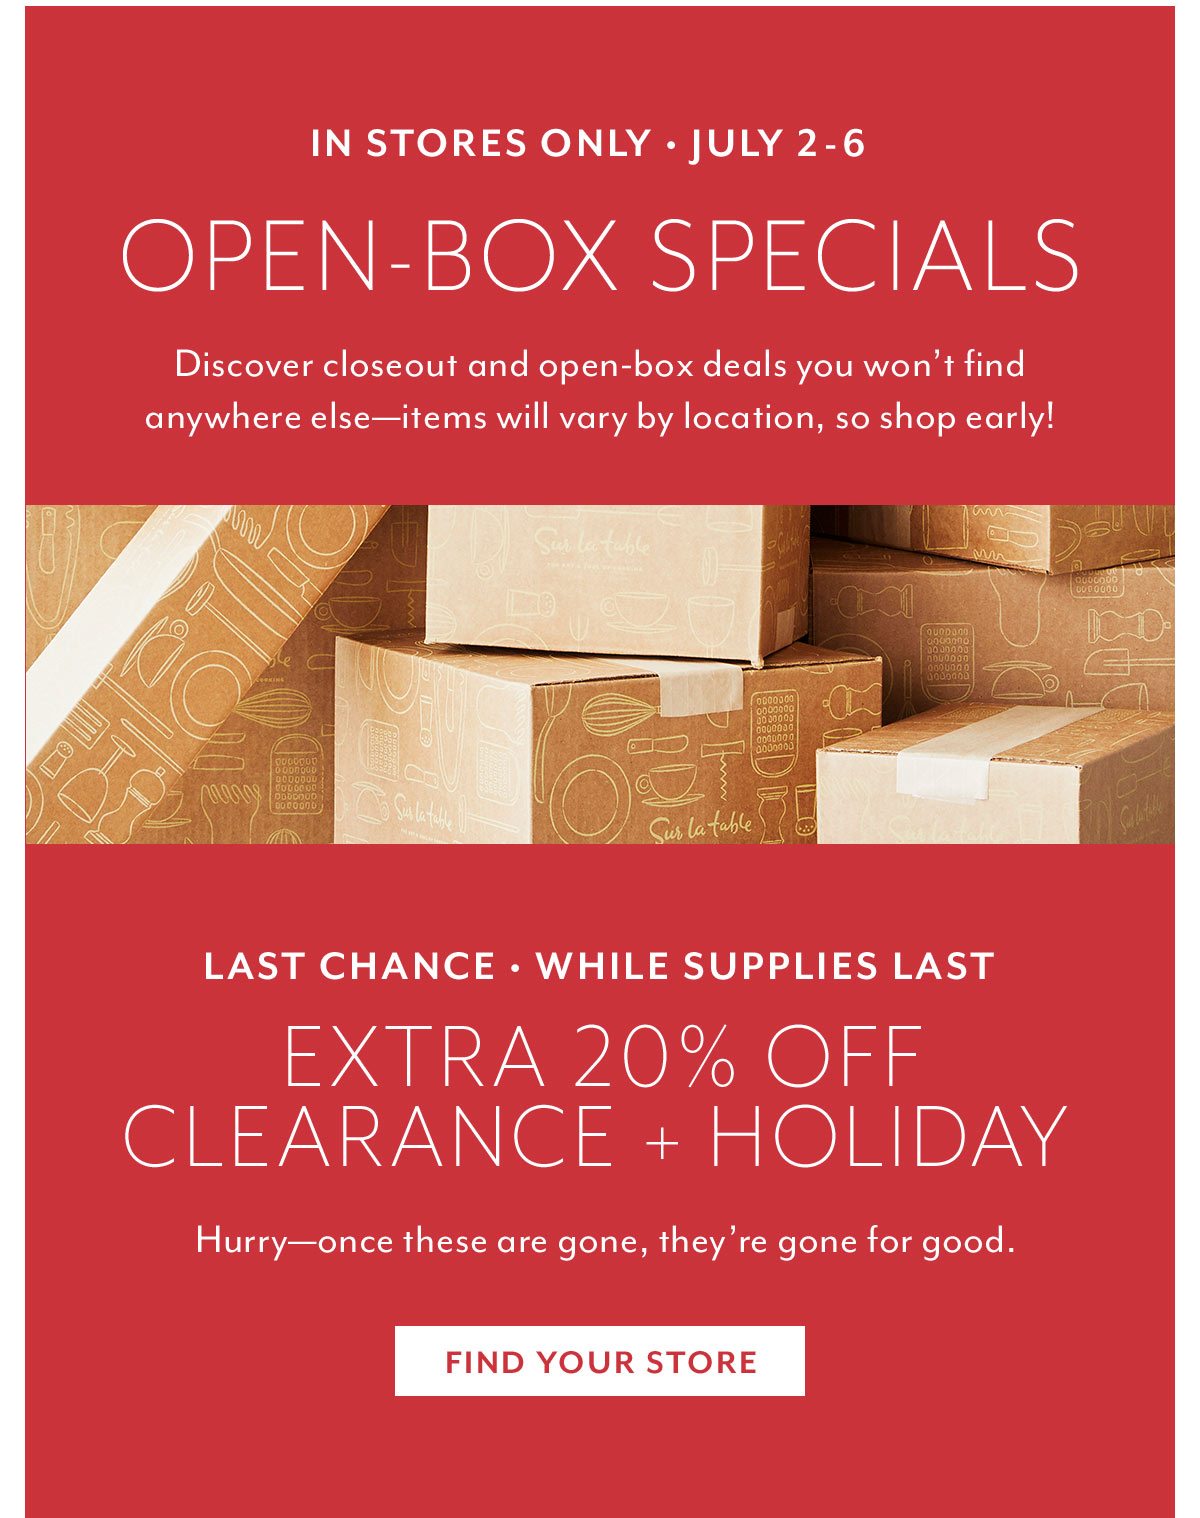 Open-Box Specials